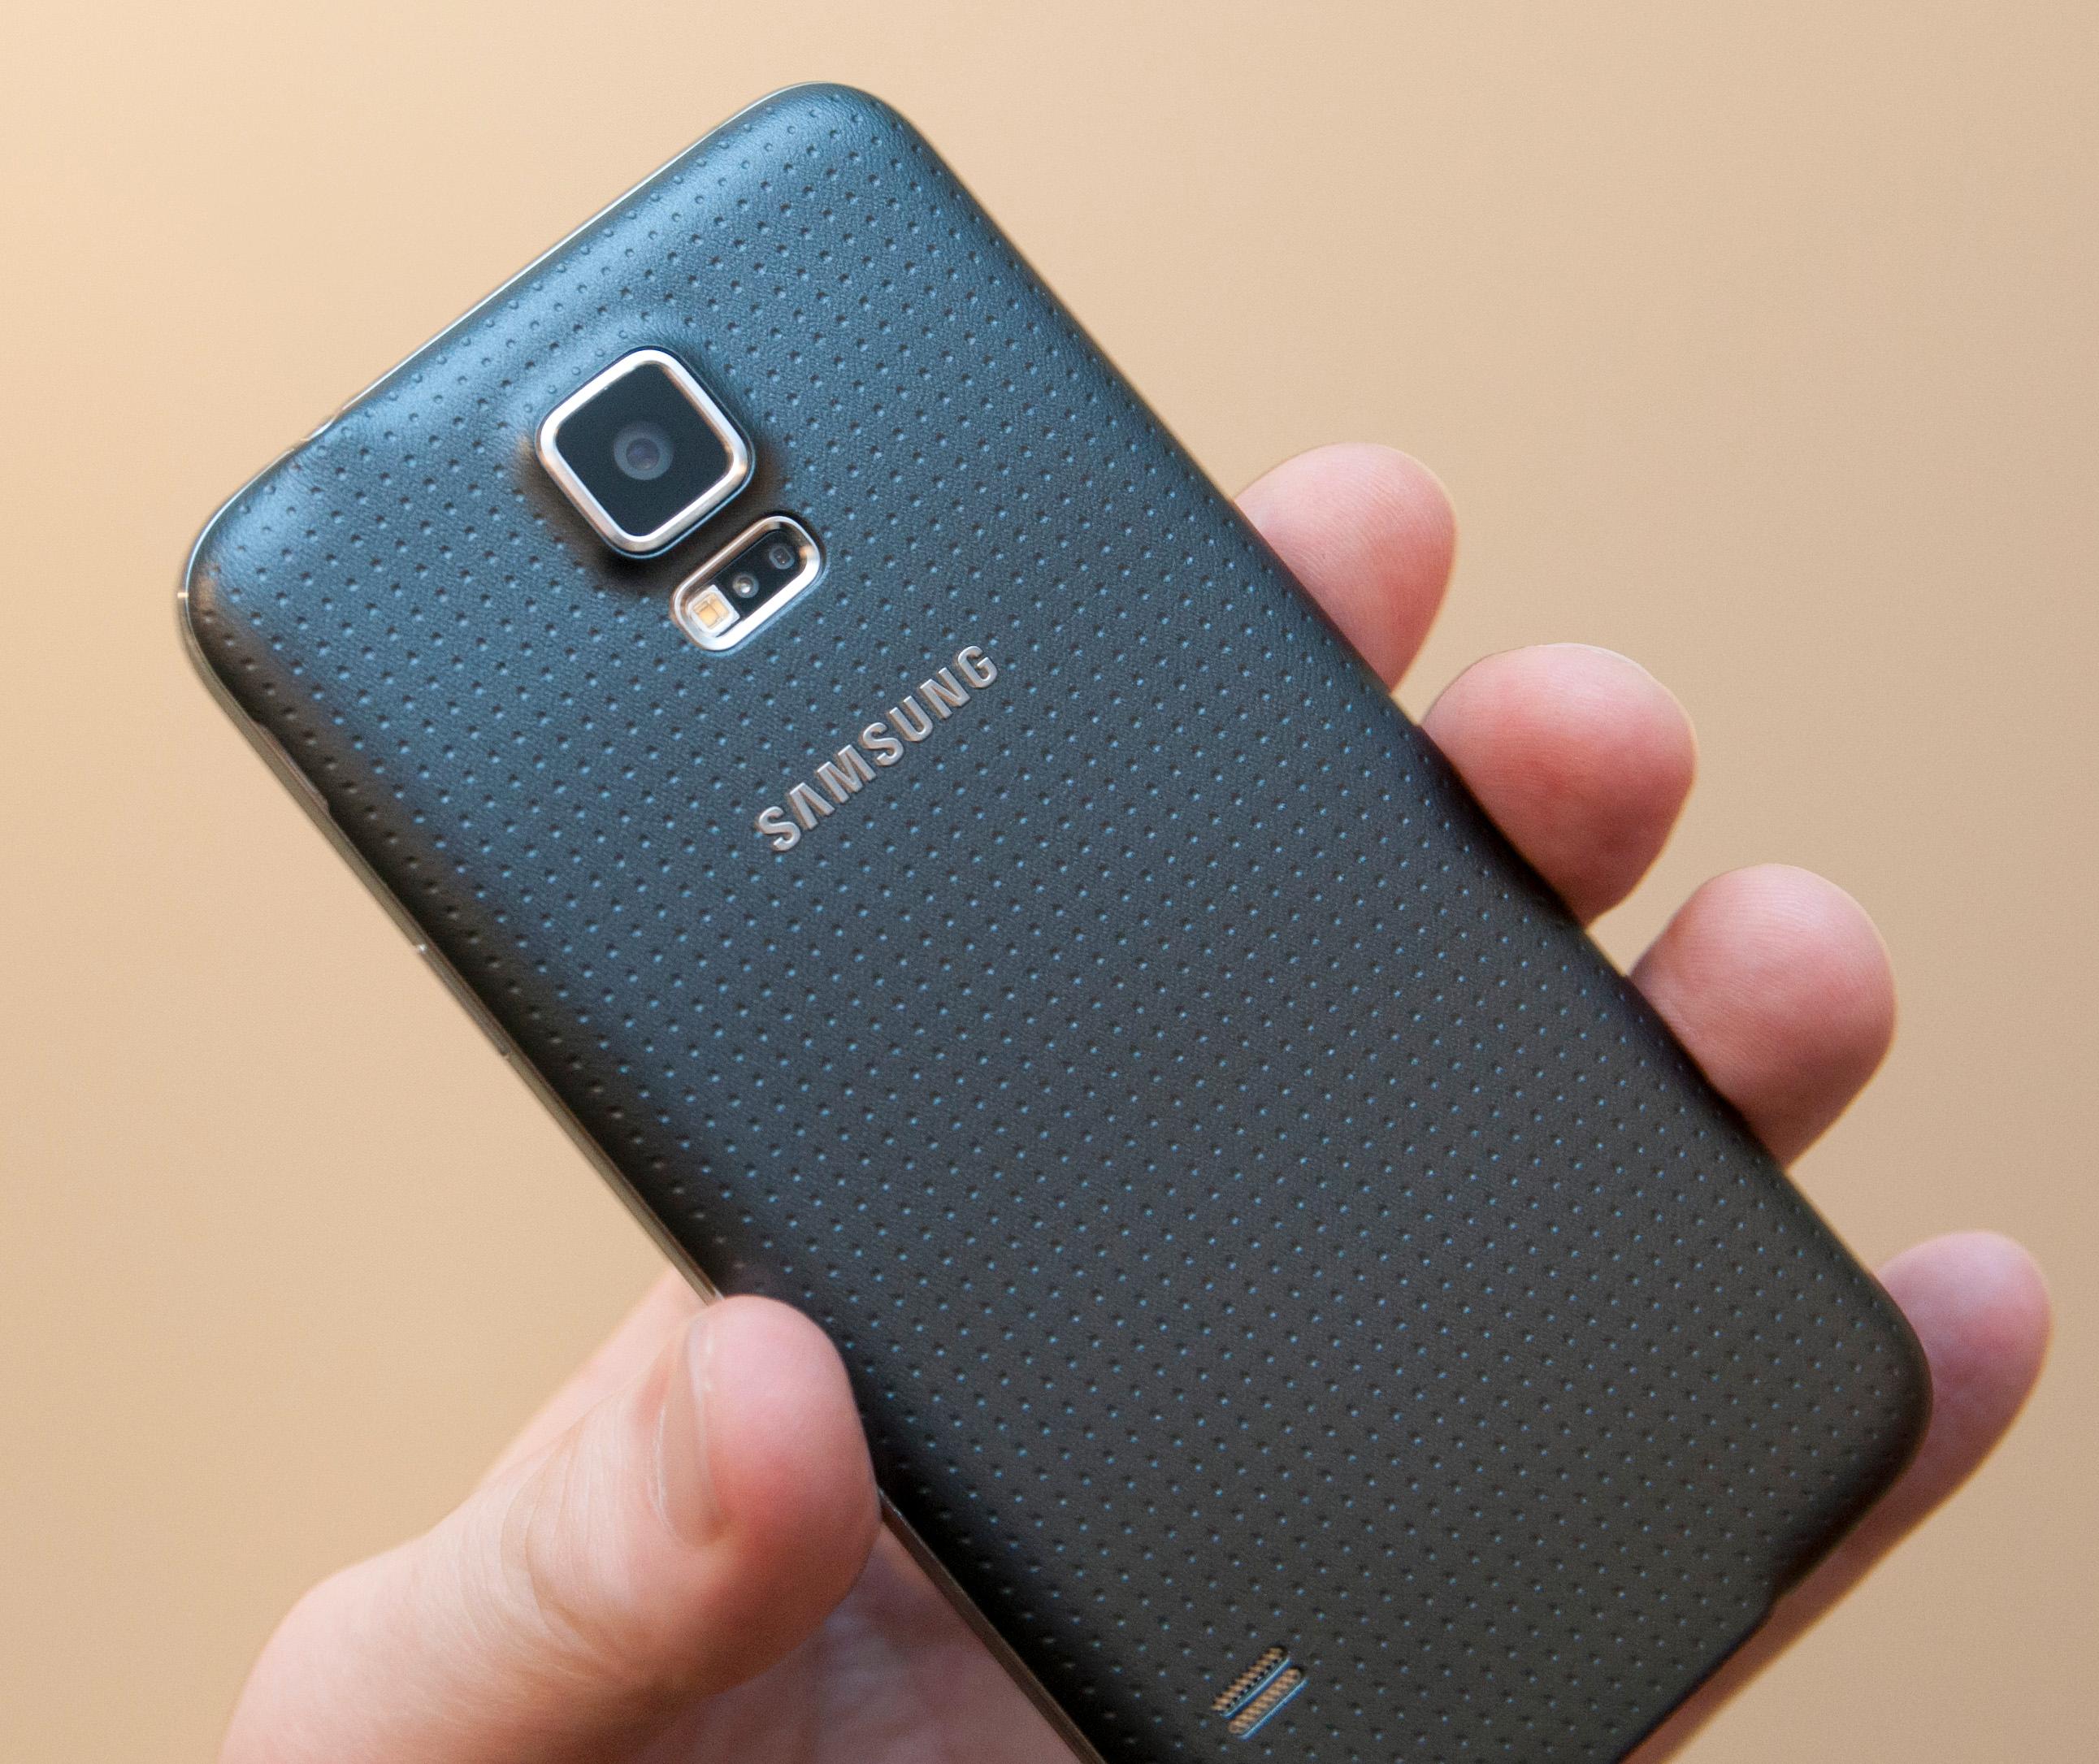 Den svarte utgaven av Galaxy S5 har litt mykere gummiering. Dermed ligger den et par hakk bedre i hånden enn den hvite.Foto: Finn Jarle Kvalheim, Amobil.no